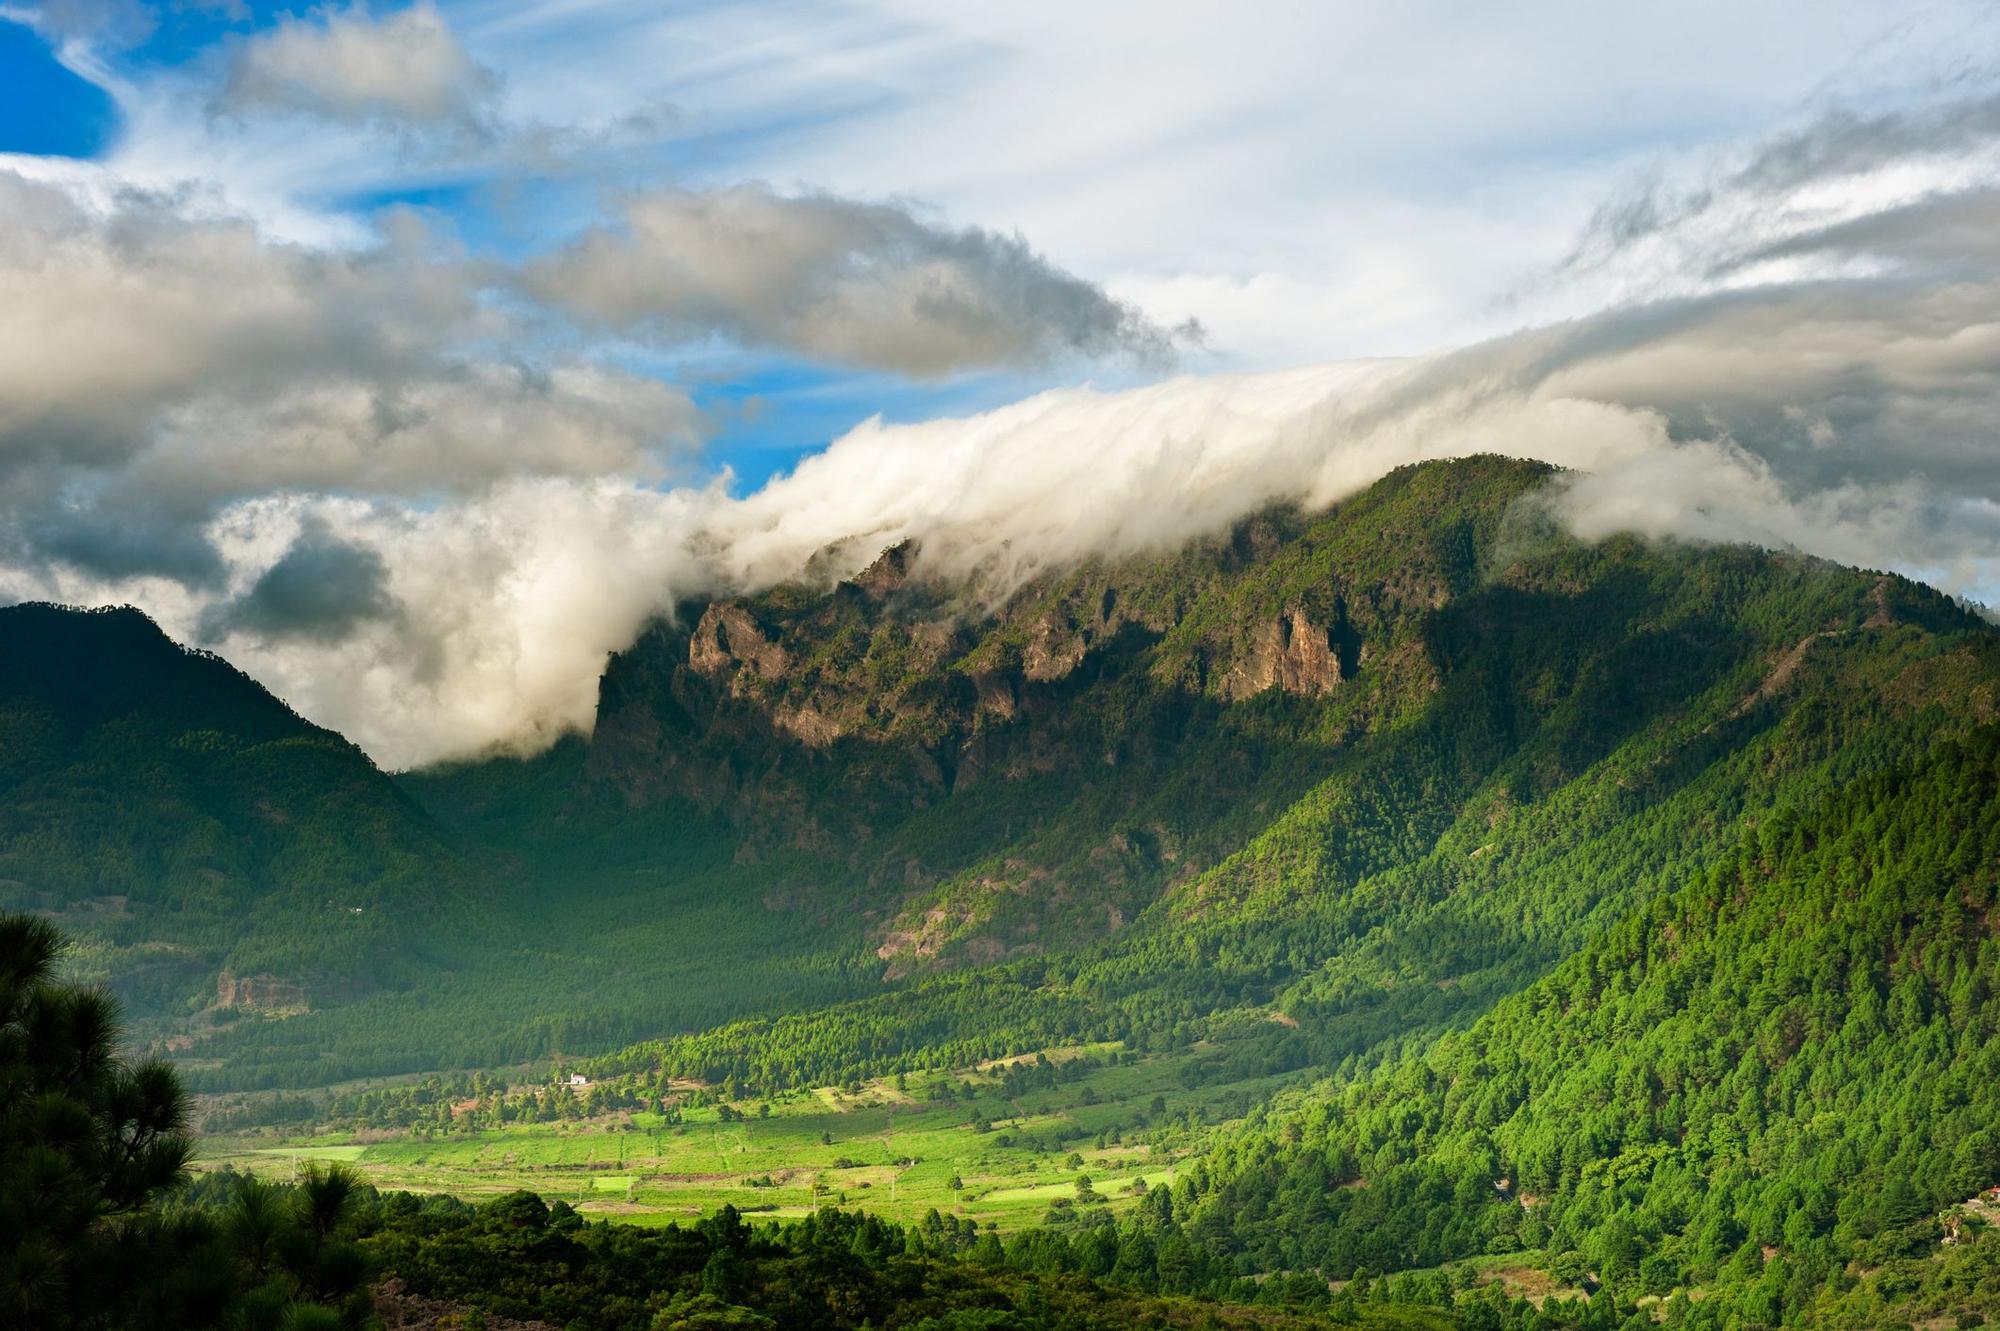 Las verdes laderas de La Palma muestran su riqueza natural